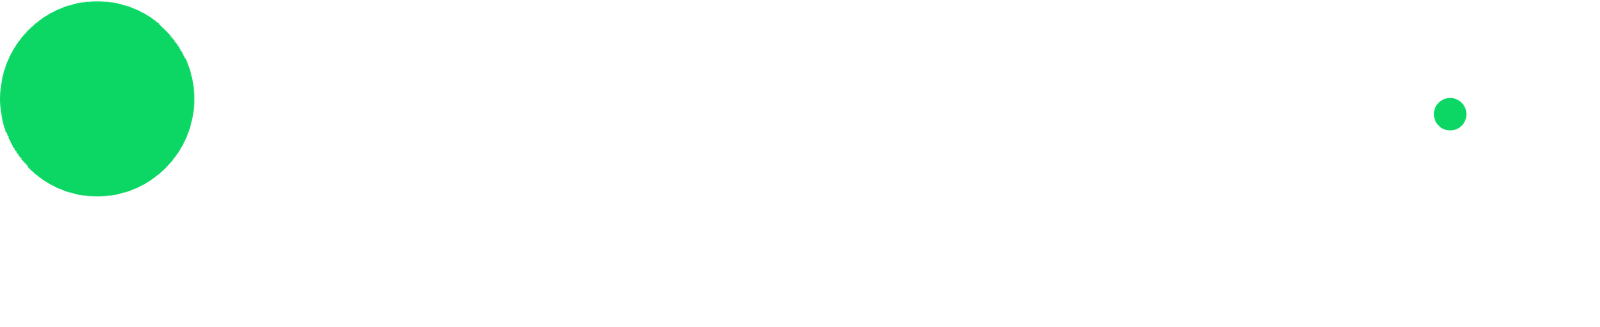 sportsbet_io-logo white